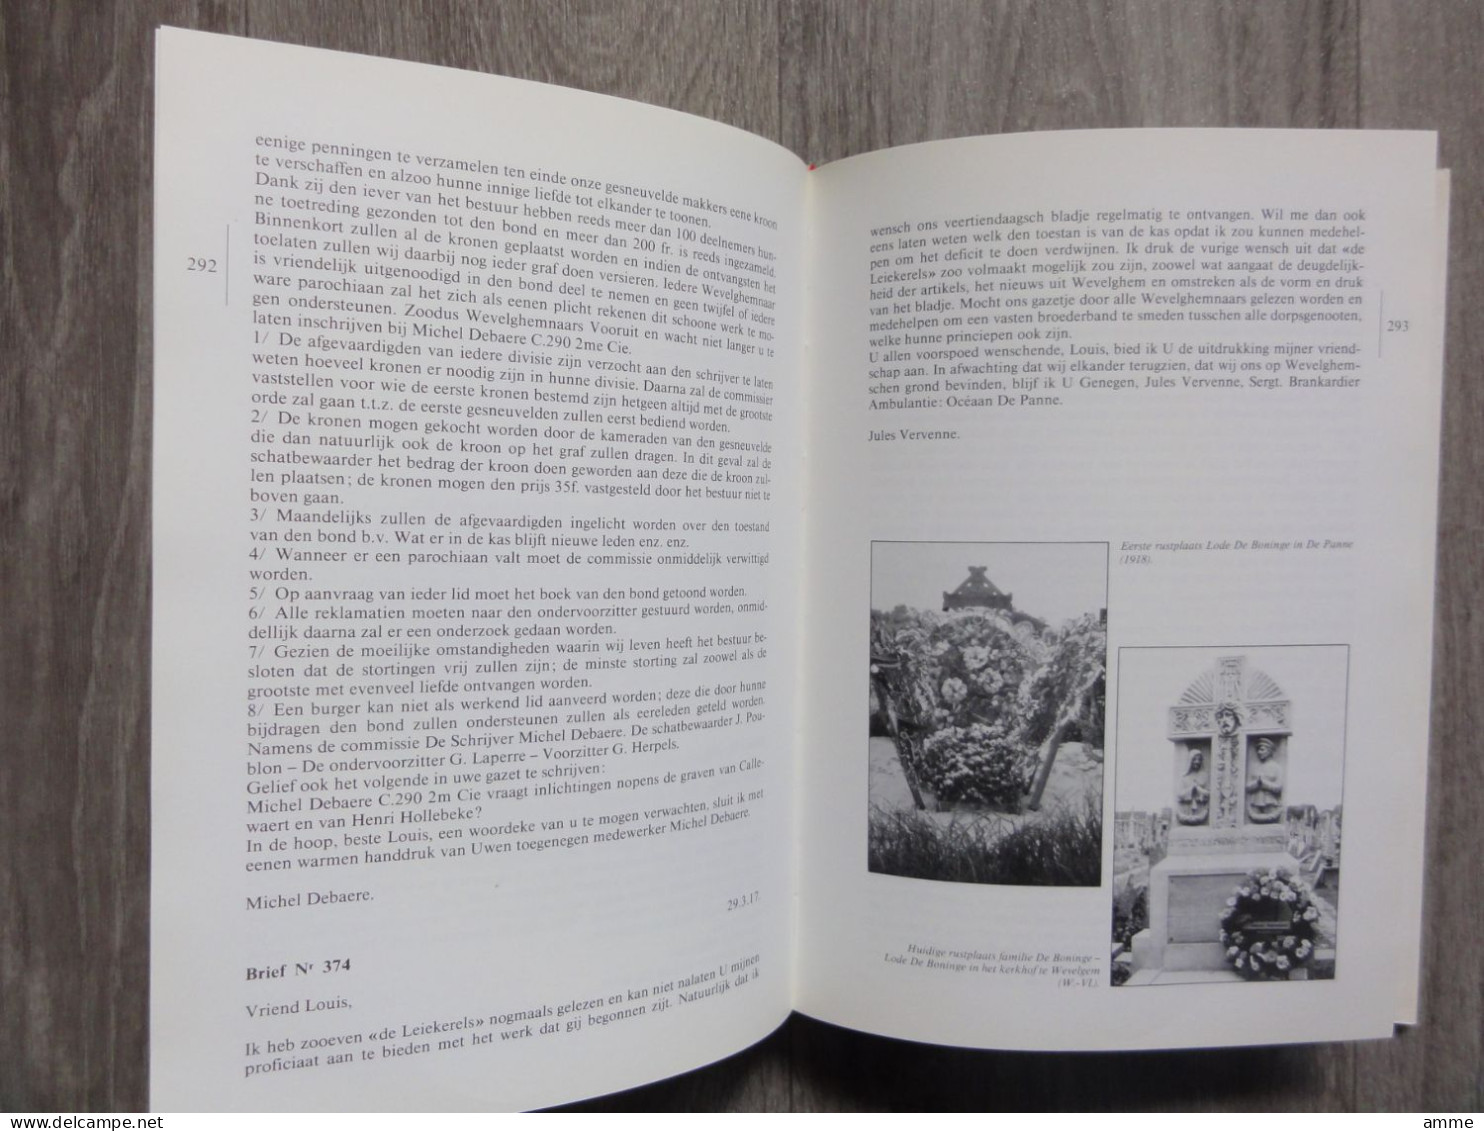 Wevelgem  * (boek)  Een Getuigenis - Oorlogskorrespondentie Van Wevelgemse Burgers En Frontsoldaten 1915-1918 - Wevelgem